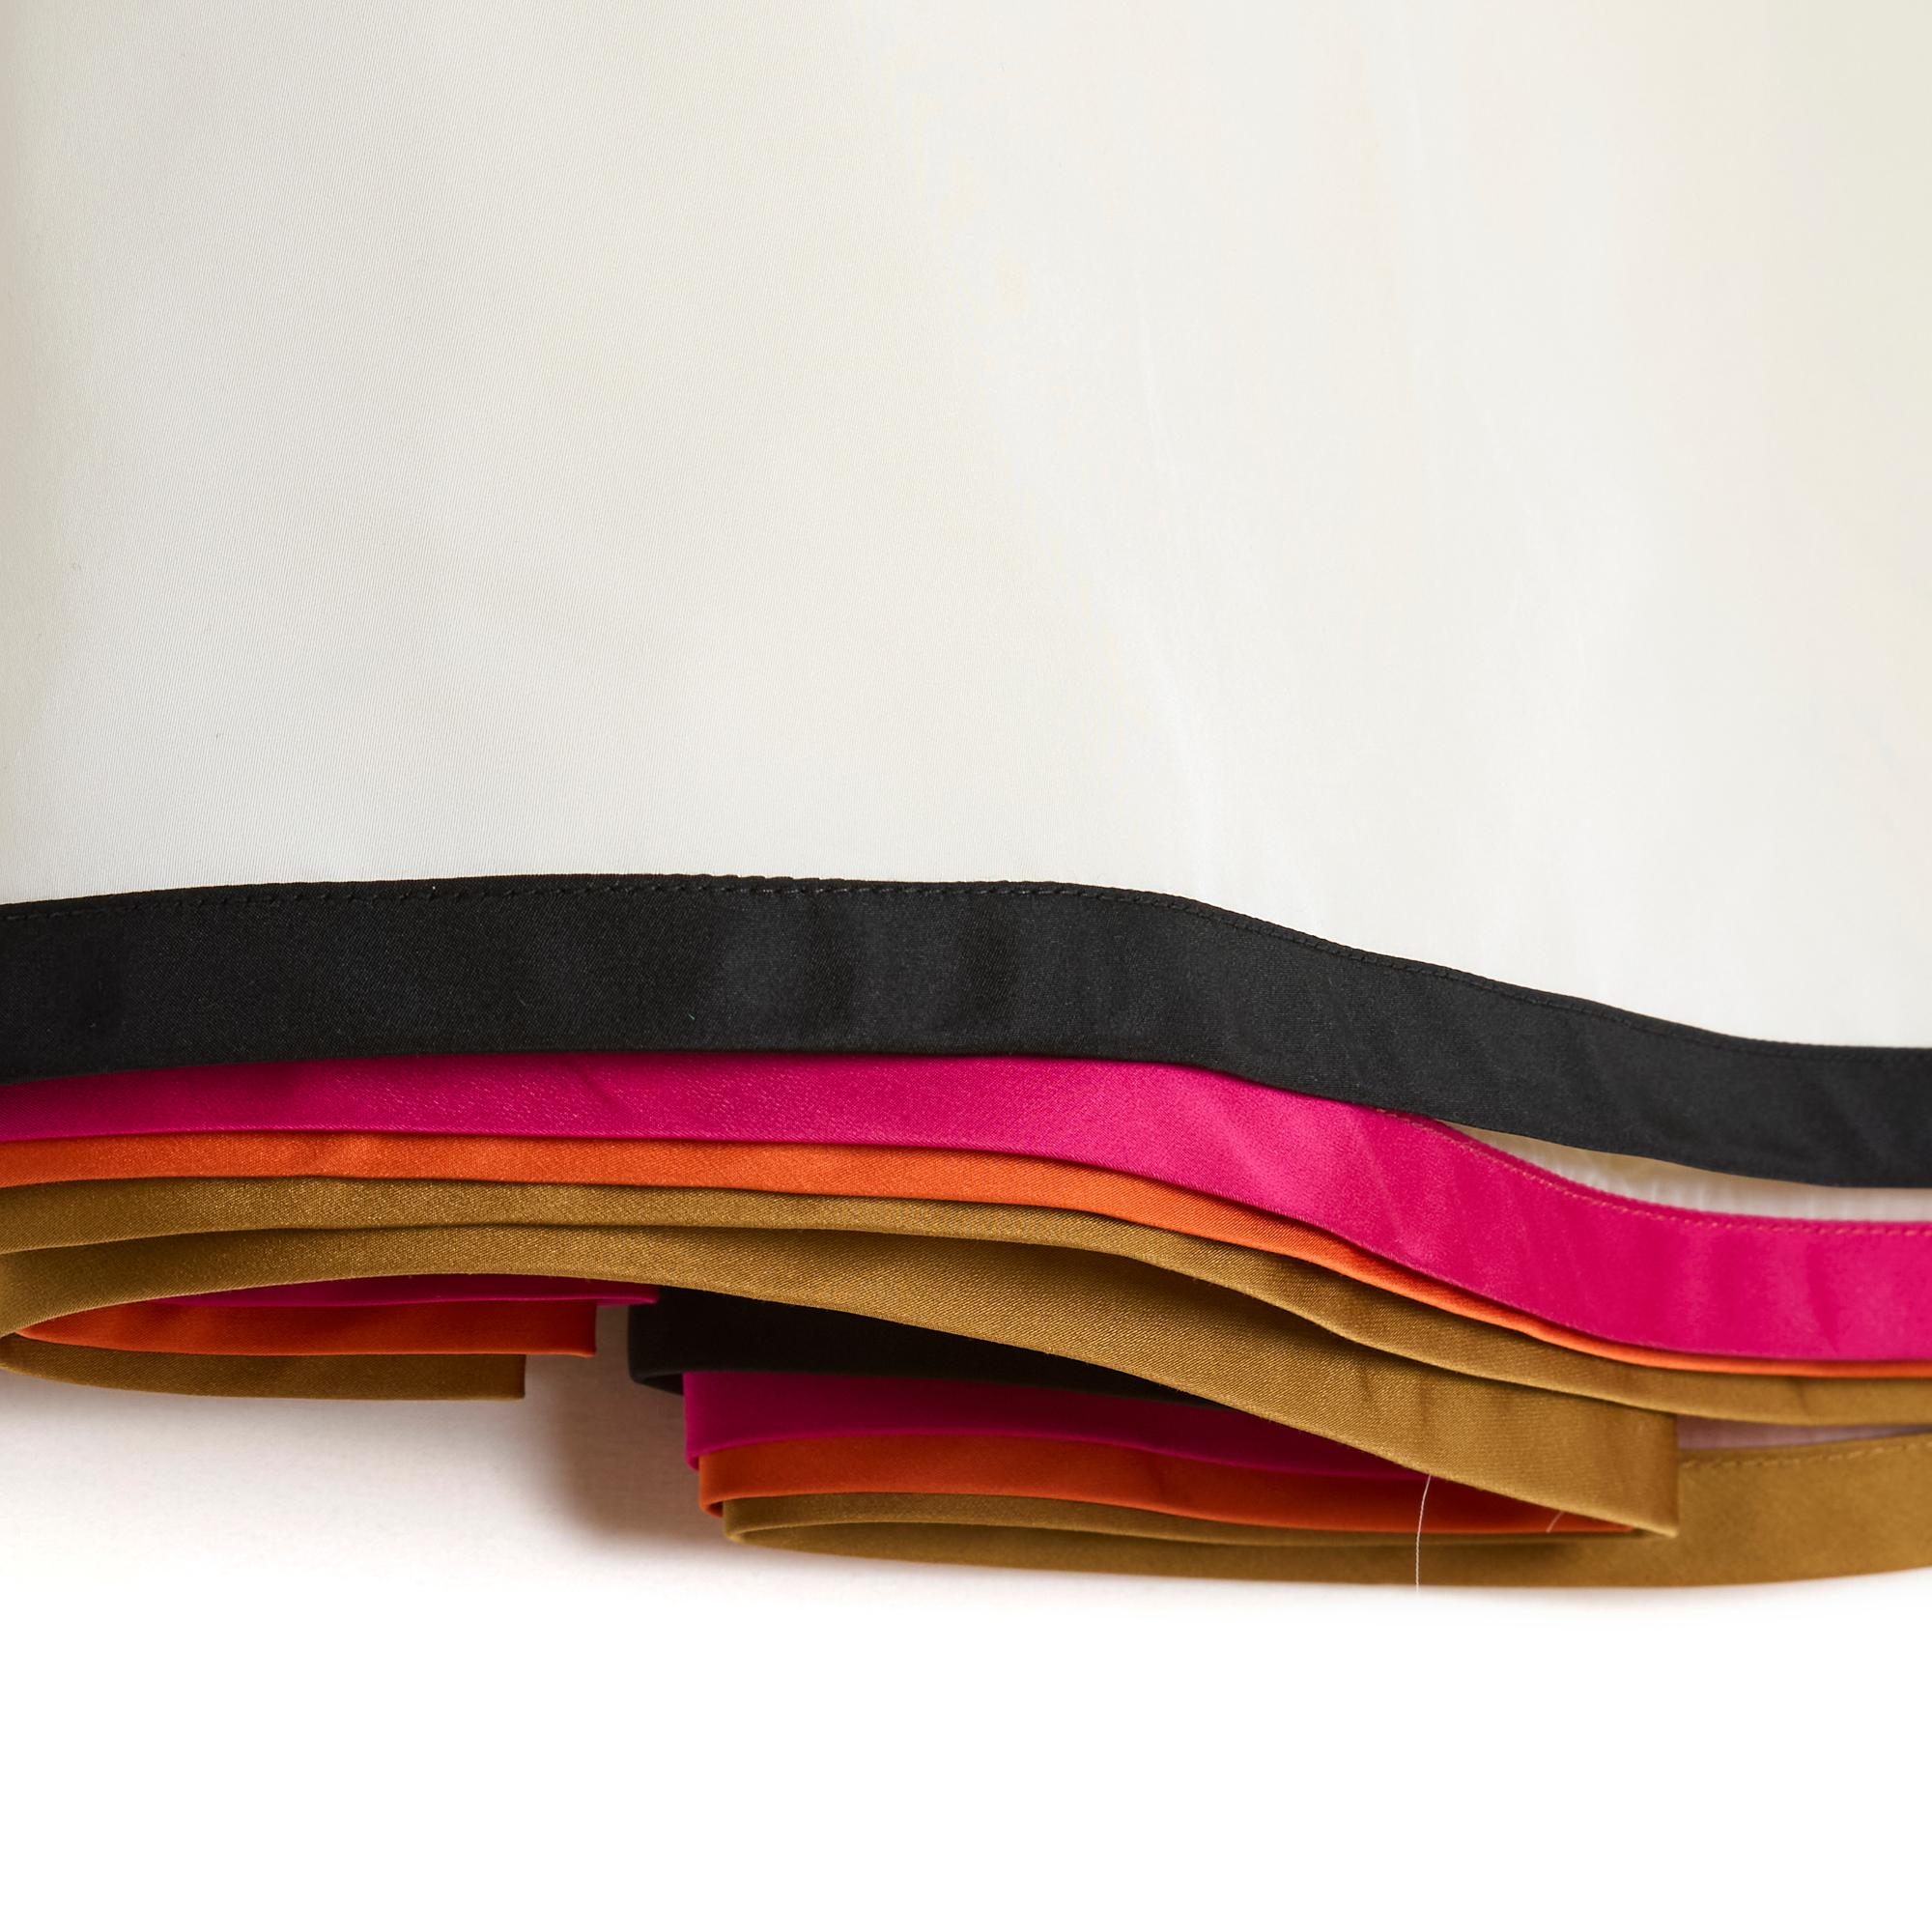 Jupe Louis Vuitton (par Marc Jacobs) coupe droite, légèrement évasée sur le devant et larges plis au dos, composée de plusieurs couches ou volants, le bas 3 en crêpe polyamide écru clair ourlé de rubans marron, orange et rose, le haut jupe en